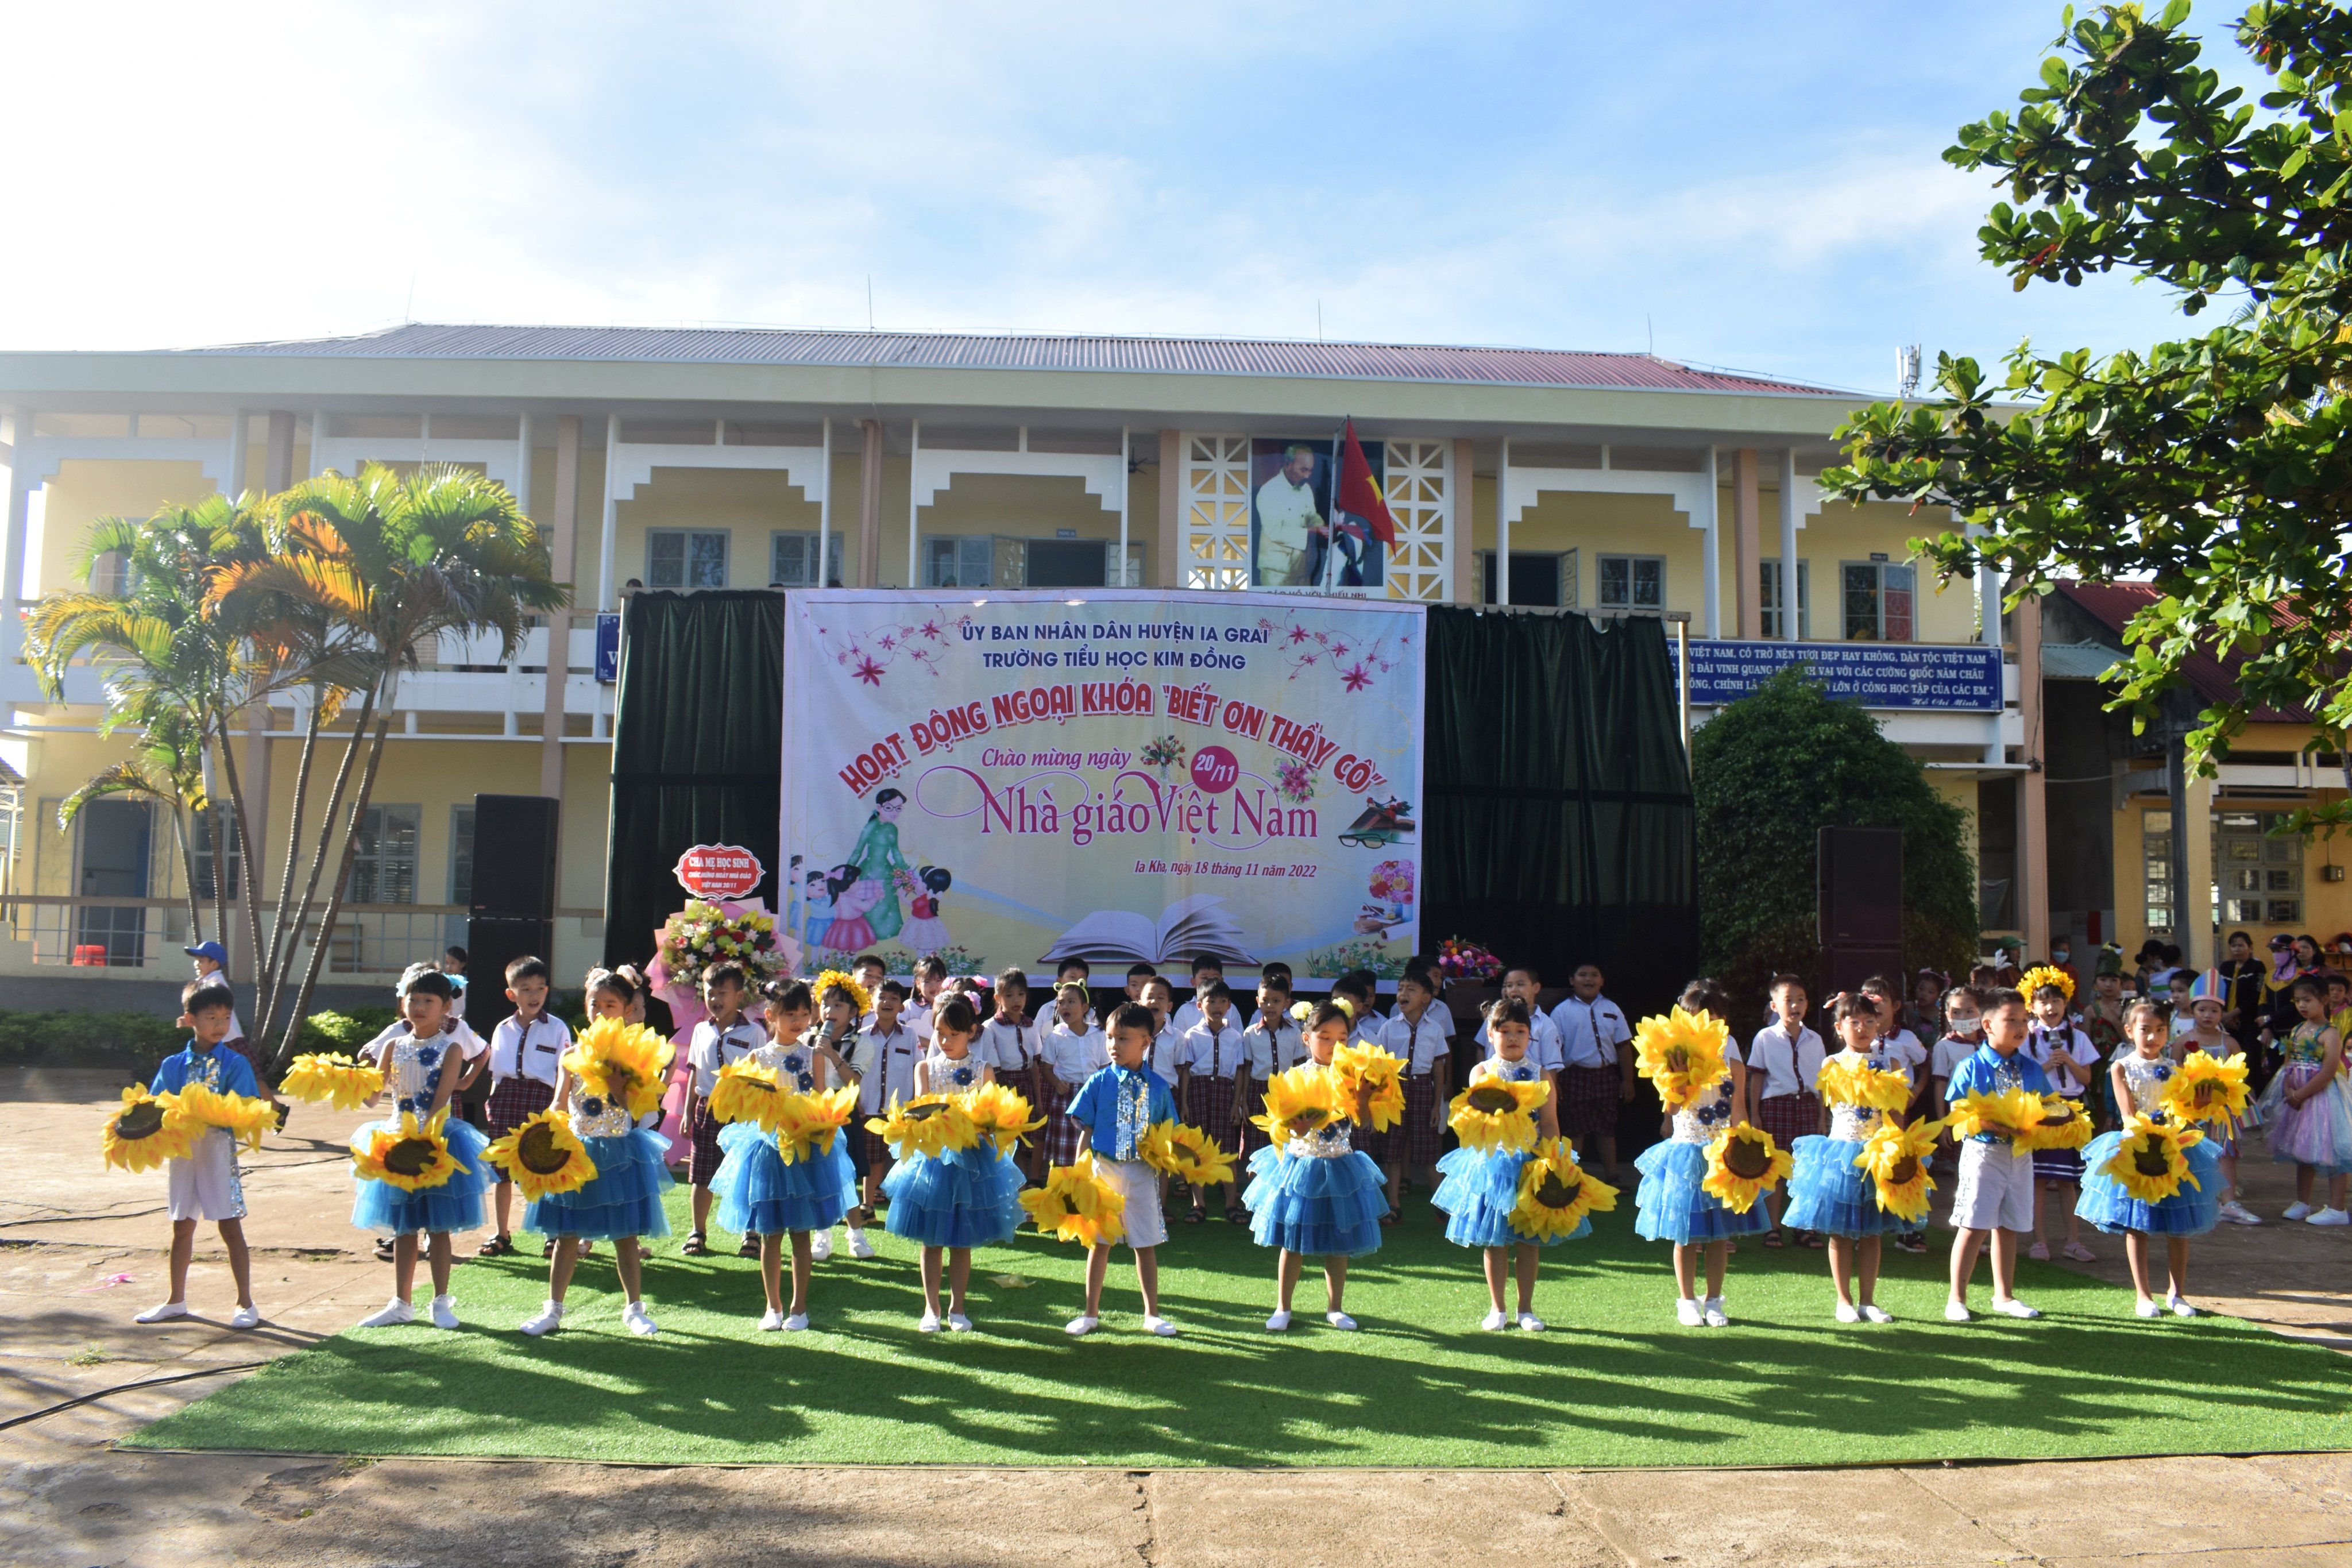 Article Trường Tiểu học Kim Đồng tổ chức hoạt động ngoại khoá “Biết ơn thầy cô”